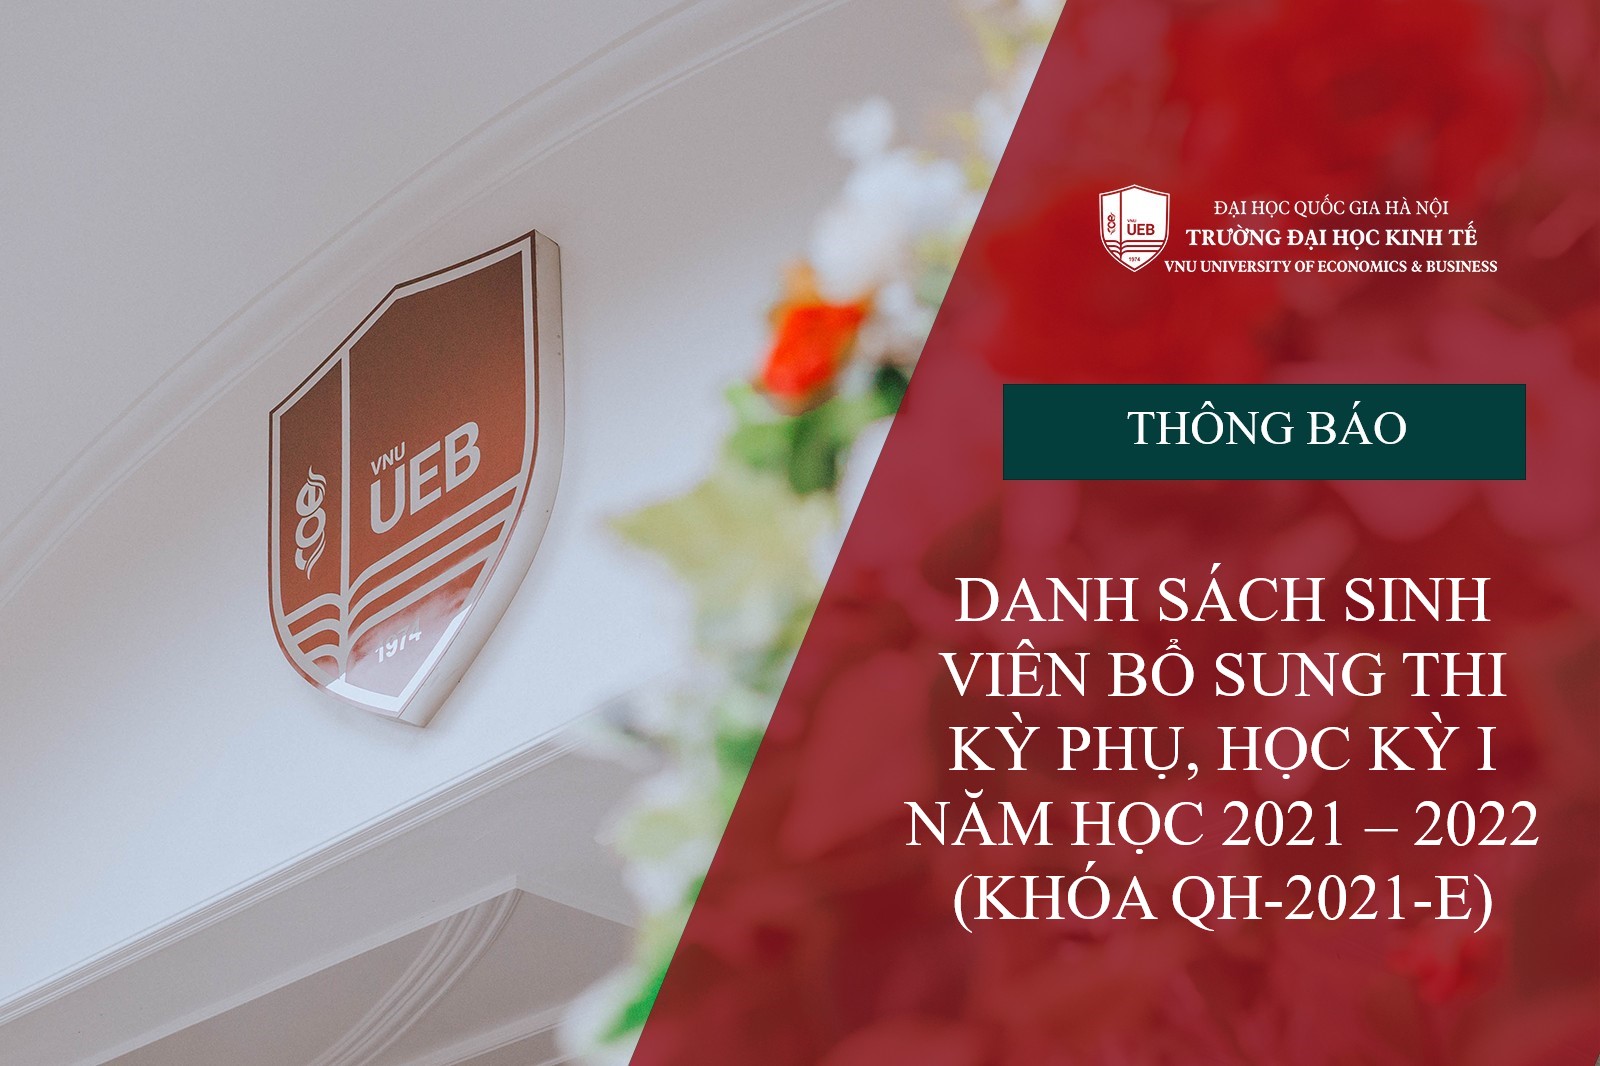 Danh sách sinh viên khóa QH-2021-E bổ sung thi kỳ thi phụ, Học kỳ I năm học 2021 – 2022